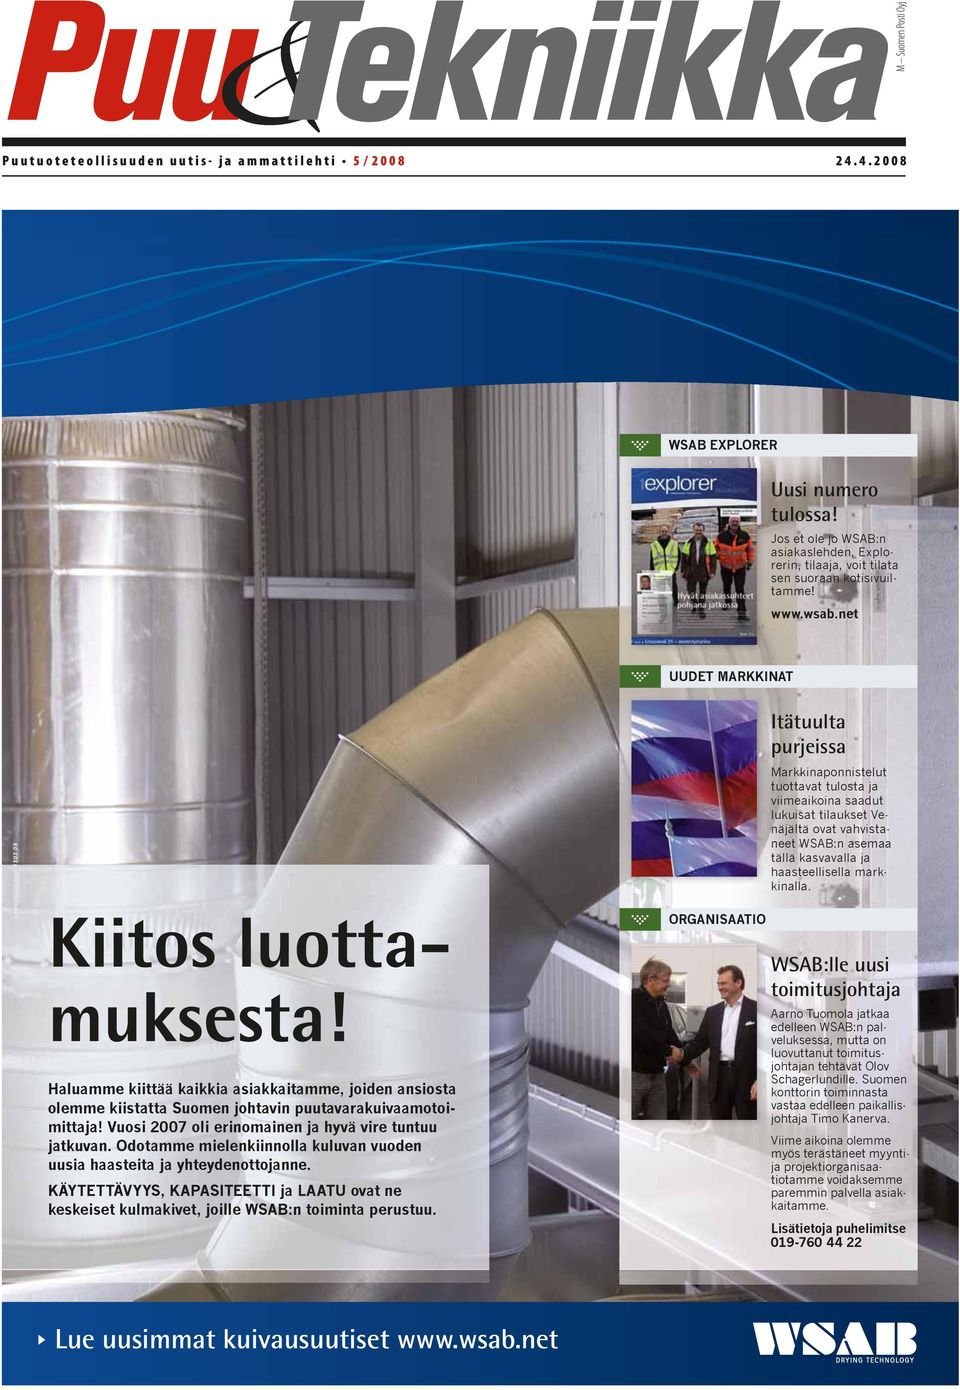 Haluamme kiittää kaikkia asiakkaitamme, joiden ansiosta olemme kiistatta Suomen johtavin puutavarakuivaamotoimittaja! Vuosi 2007 oli erinomainen ja hyvä vire tuntuu jatkuvan.